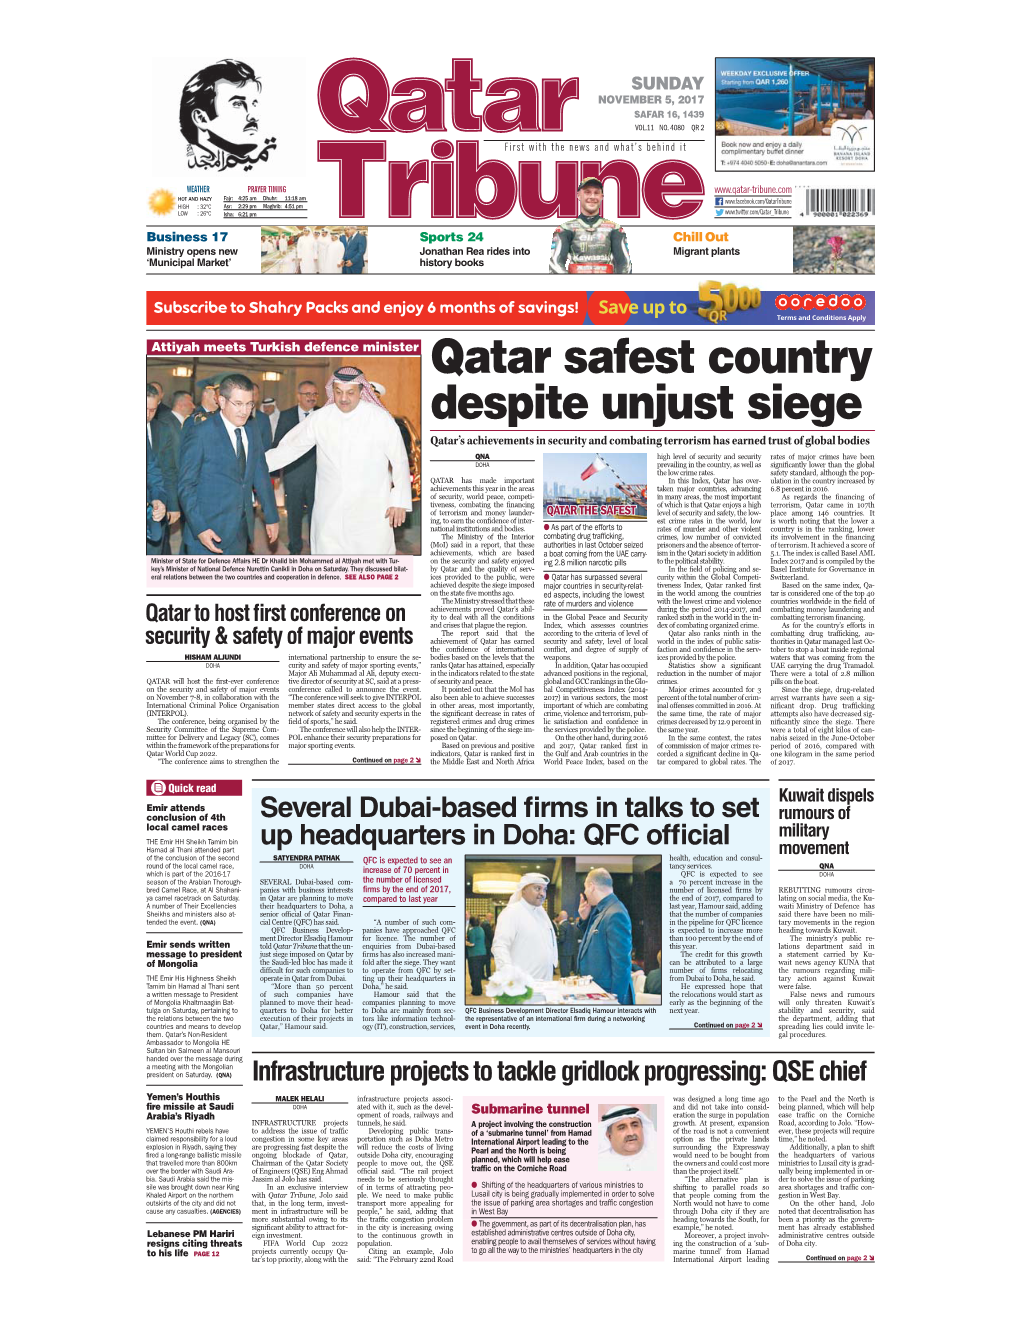 Qatar Safest Country Despite Unjust Siege